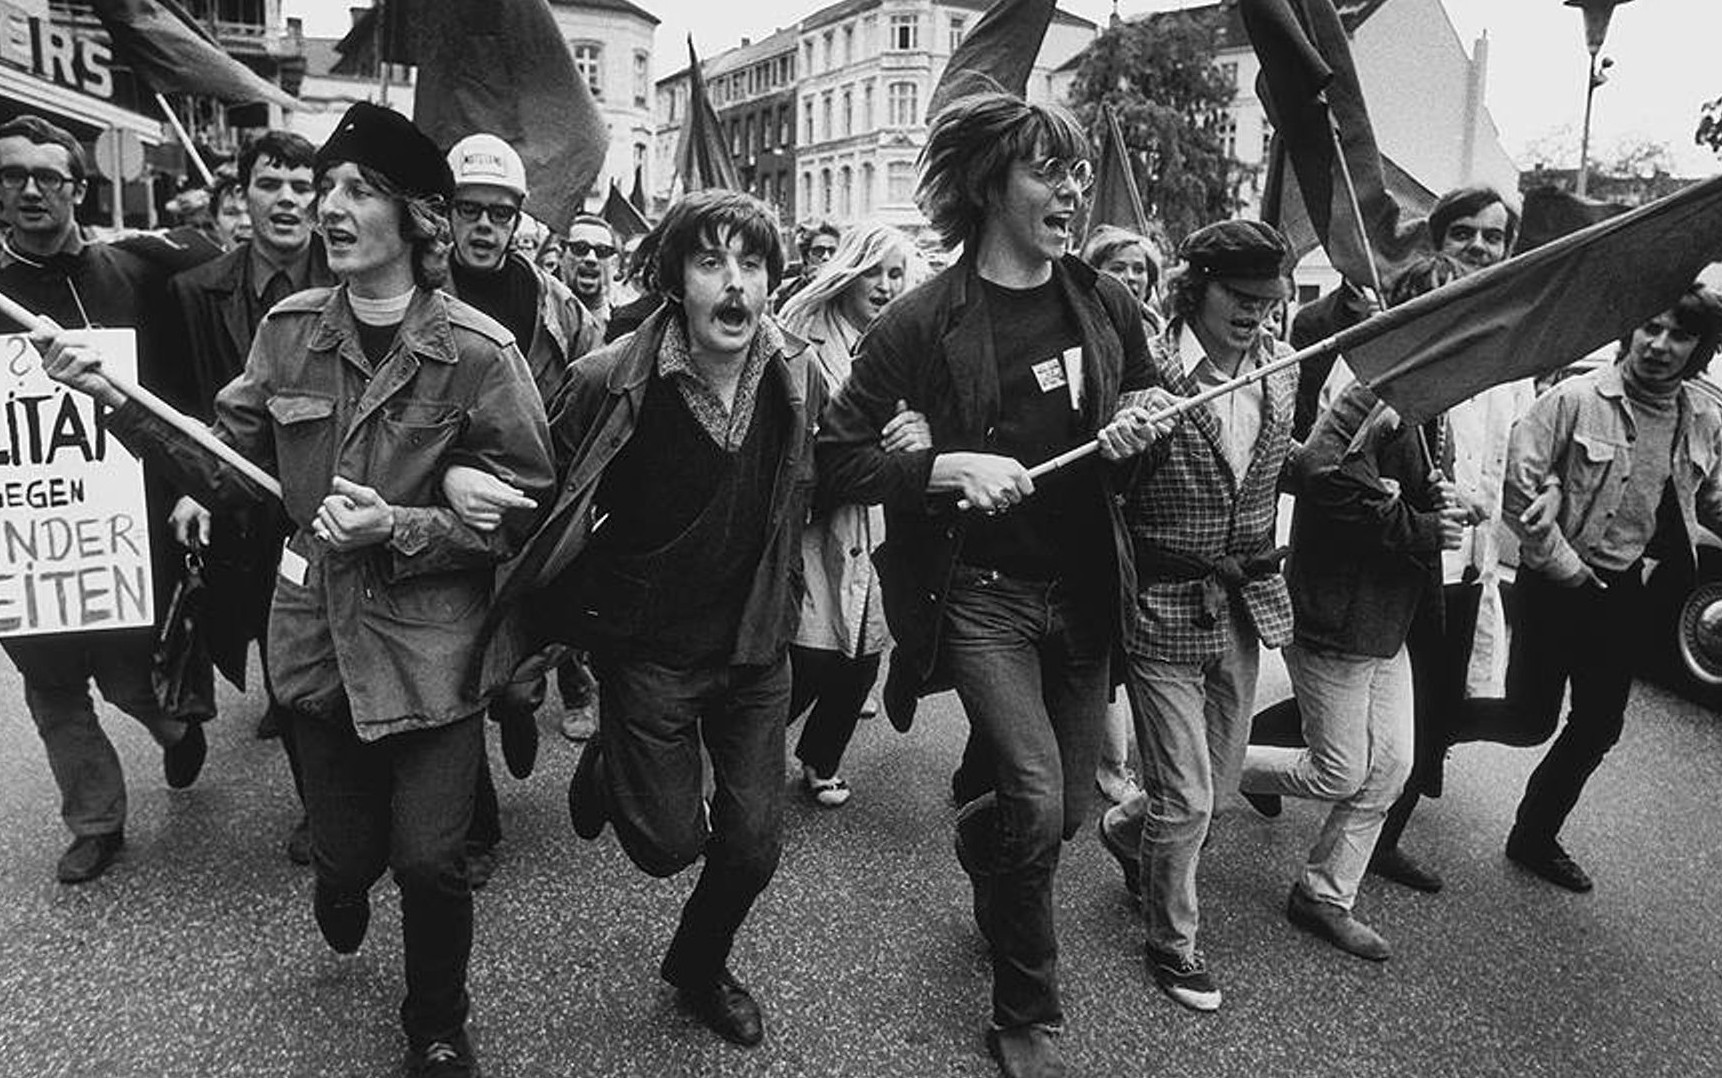 Кризис 1960 1970. Студенческие протесты США 1968. Студенческие протесты в ФРГ В 1968 году. Париж 1968 студенческие бунты. Студенческие протесты 1968 Германия.